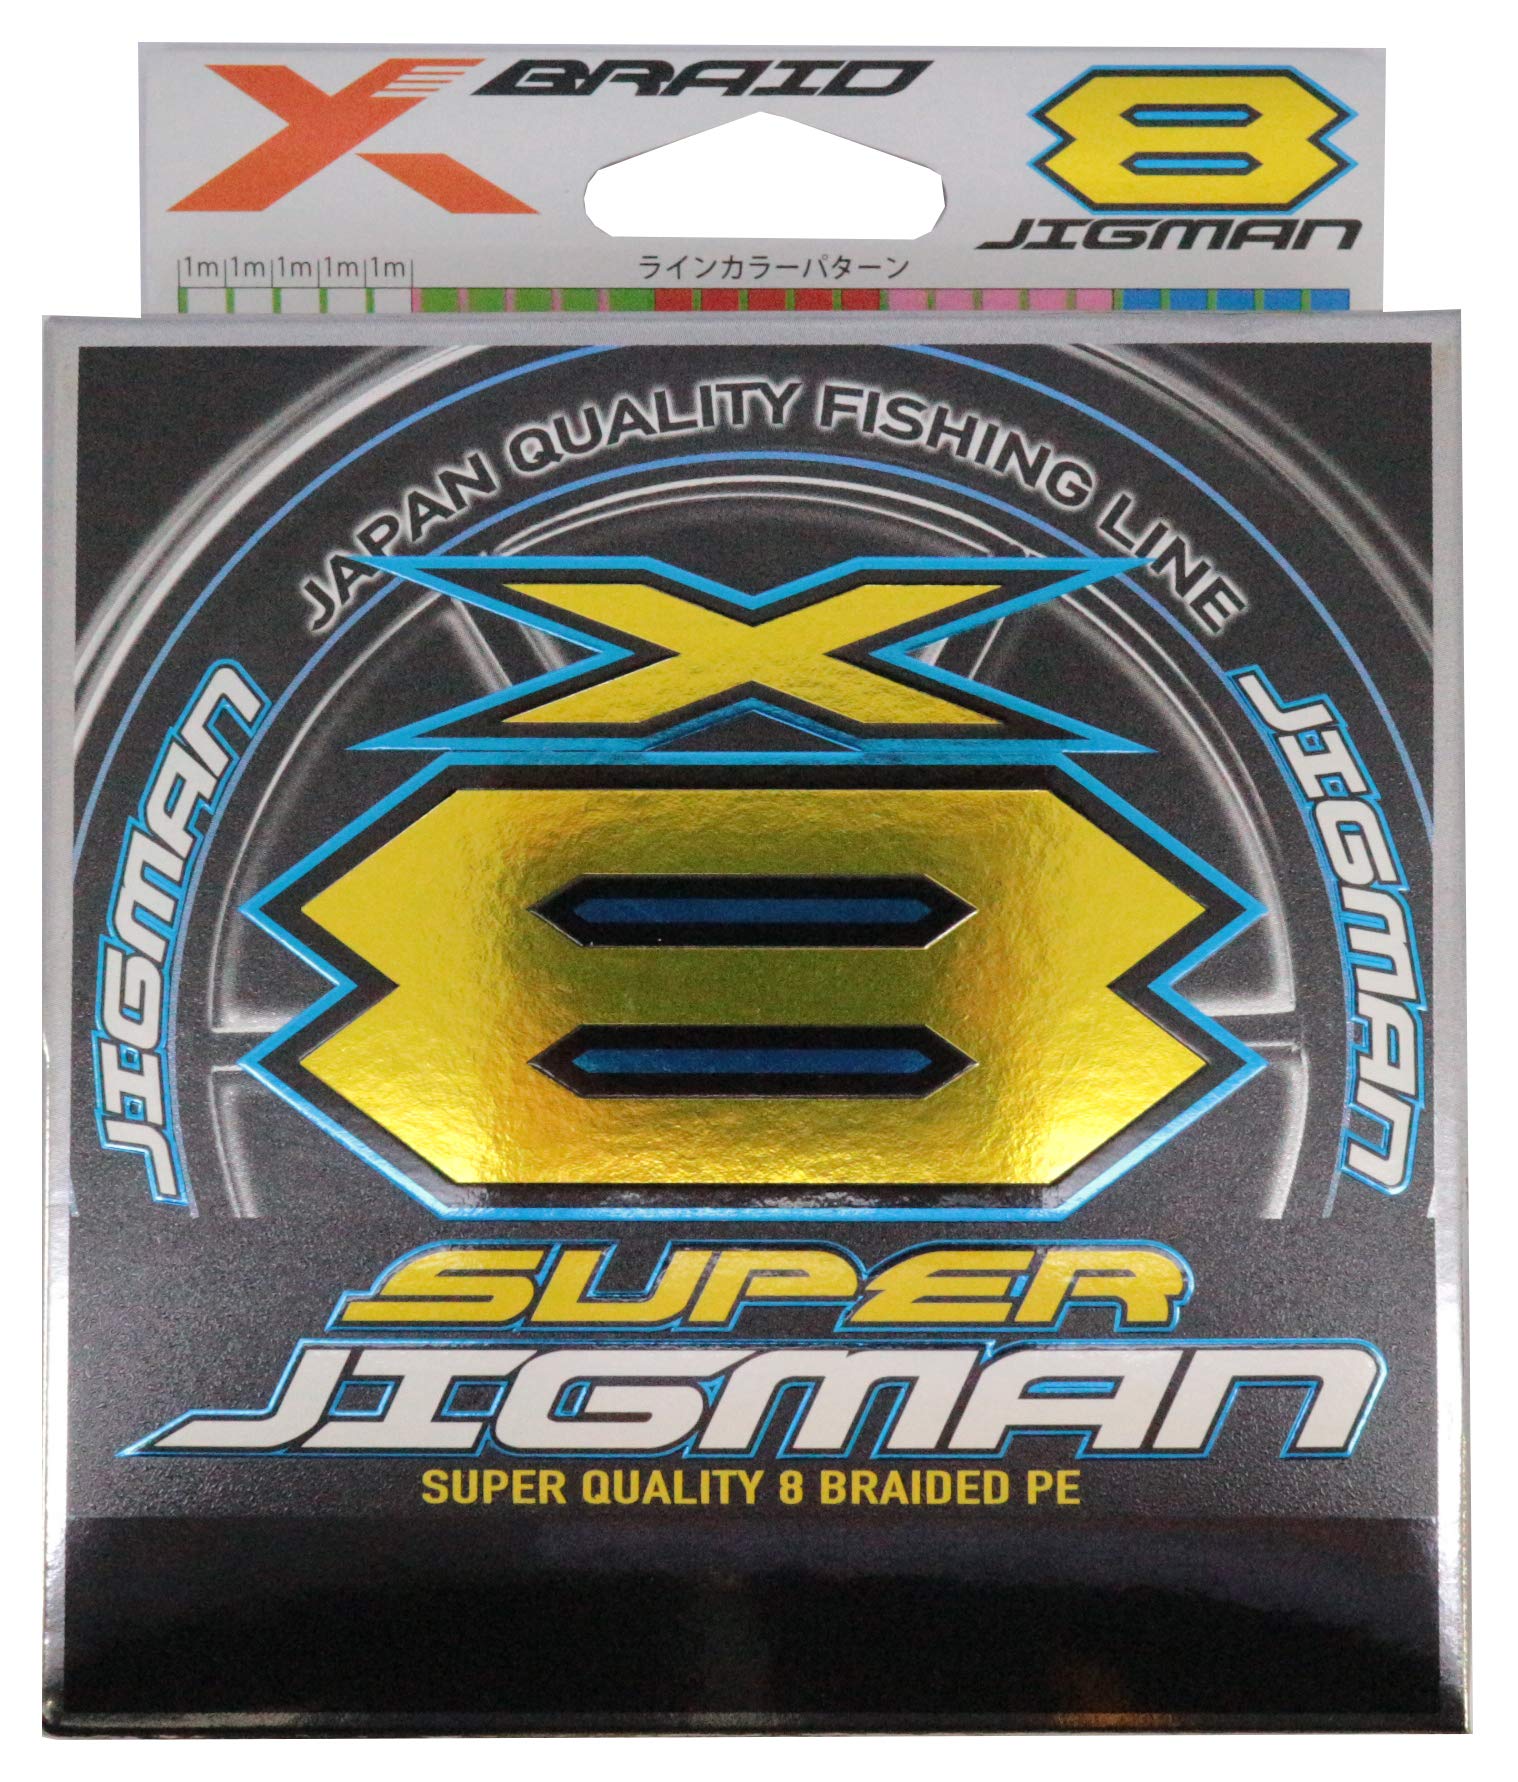 エックスブレイド(X-Braid) スーパー ジグマン X8 300m 2号 35lb5カラー